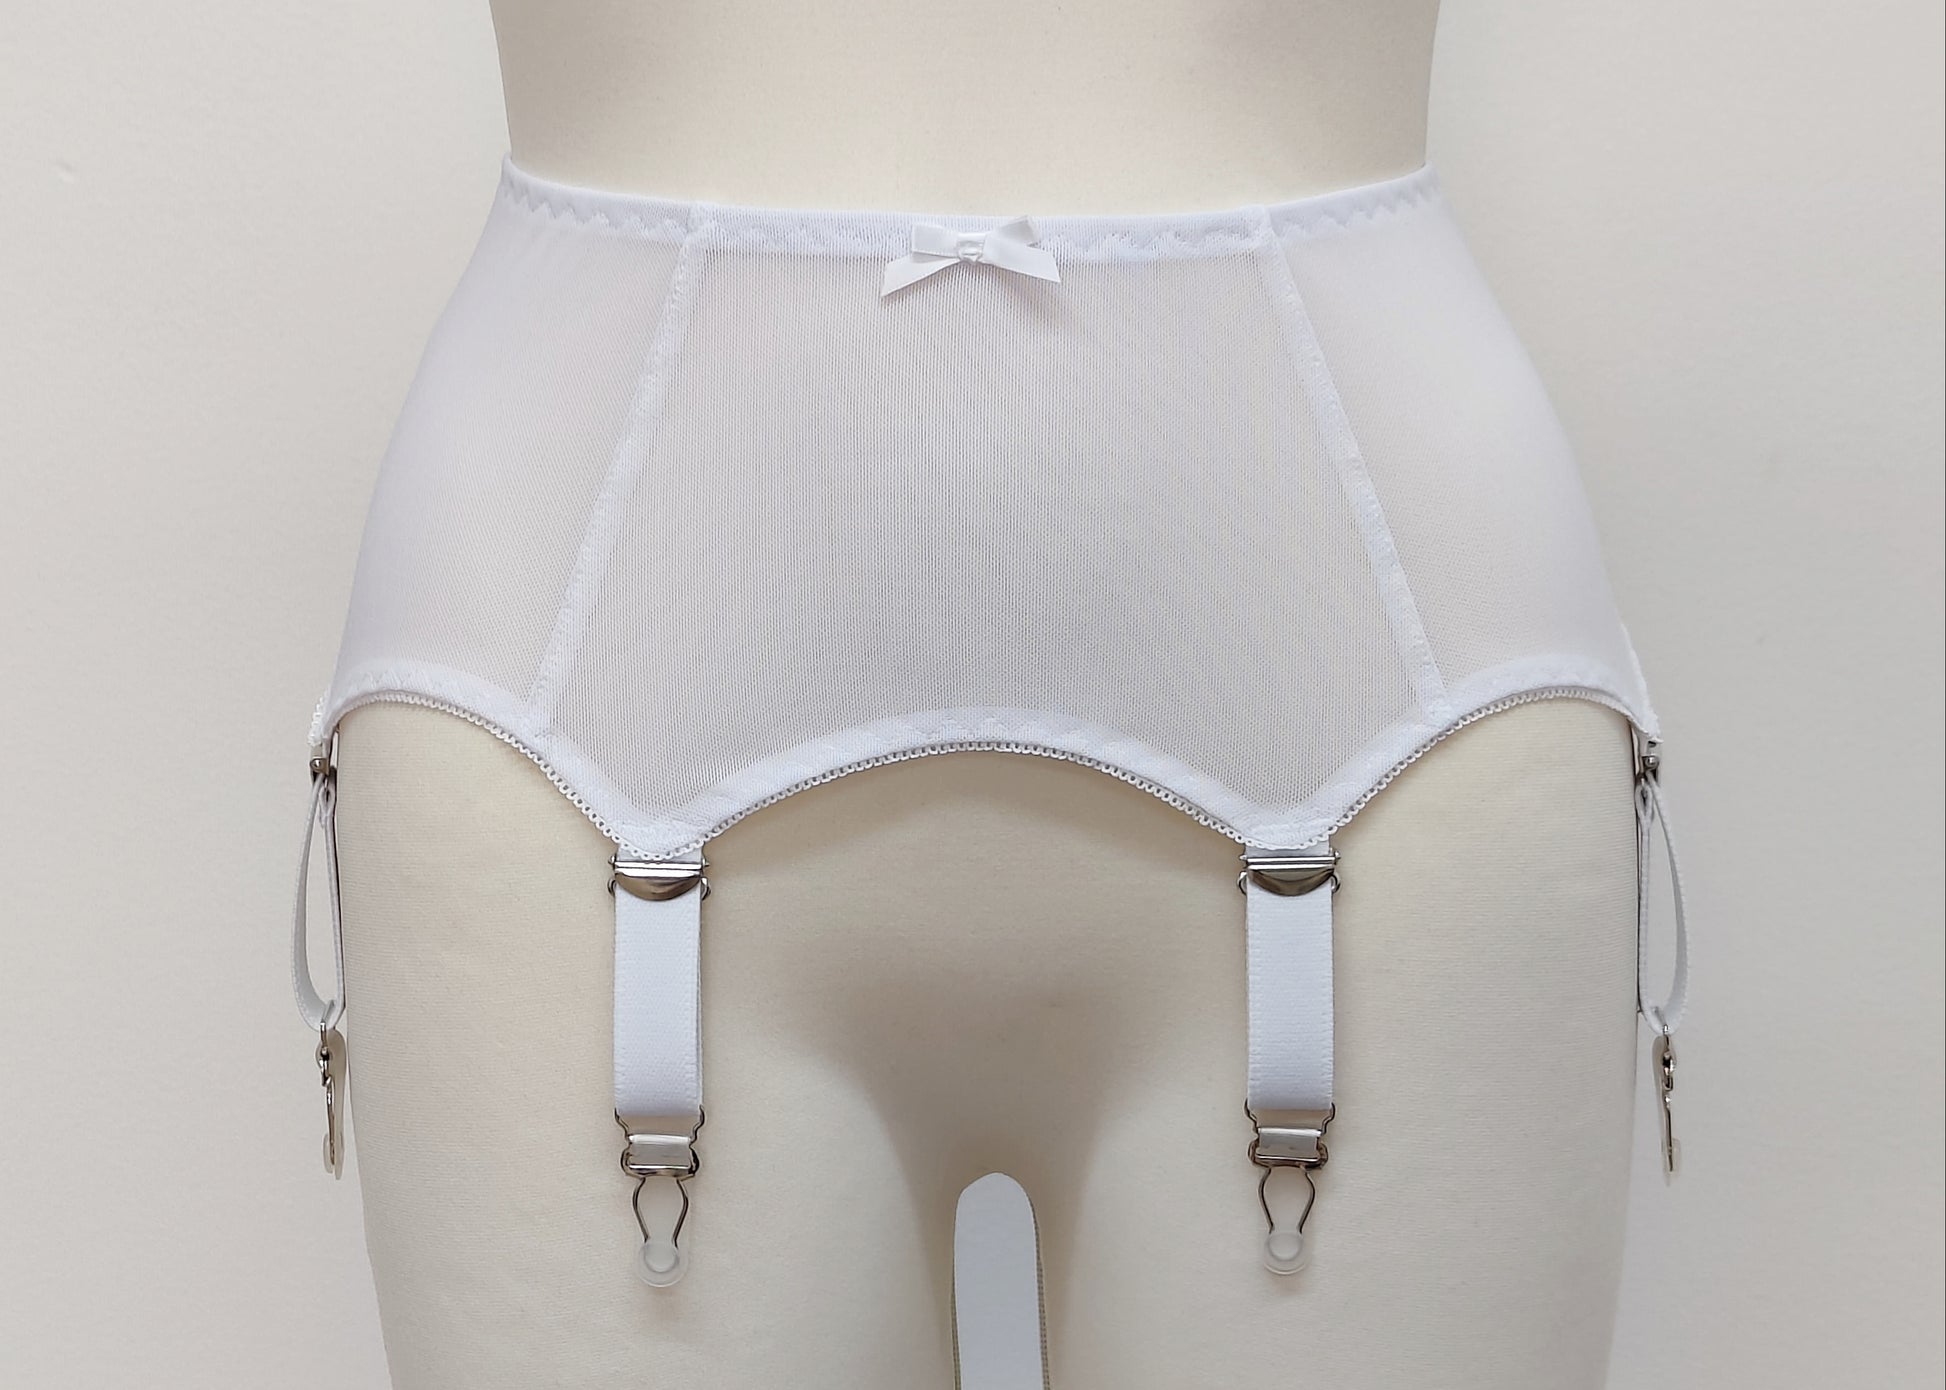 Girdle Size M/L White Mesh Garter Belt Suspender Belt VINTAGE